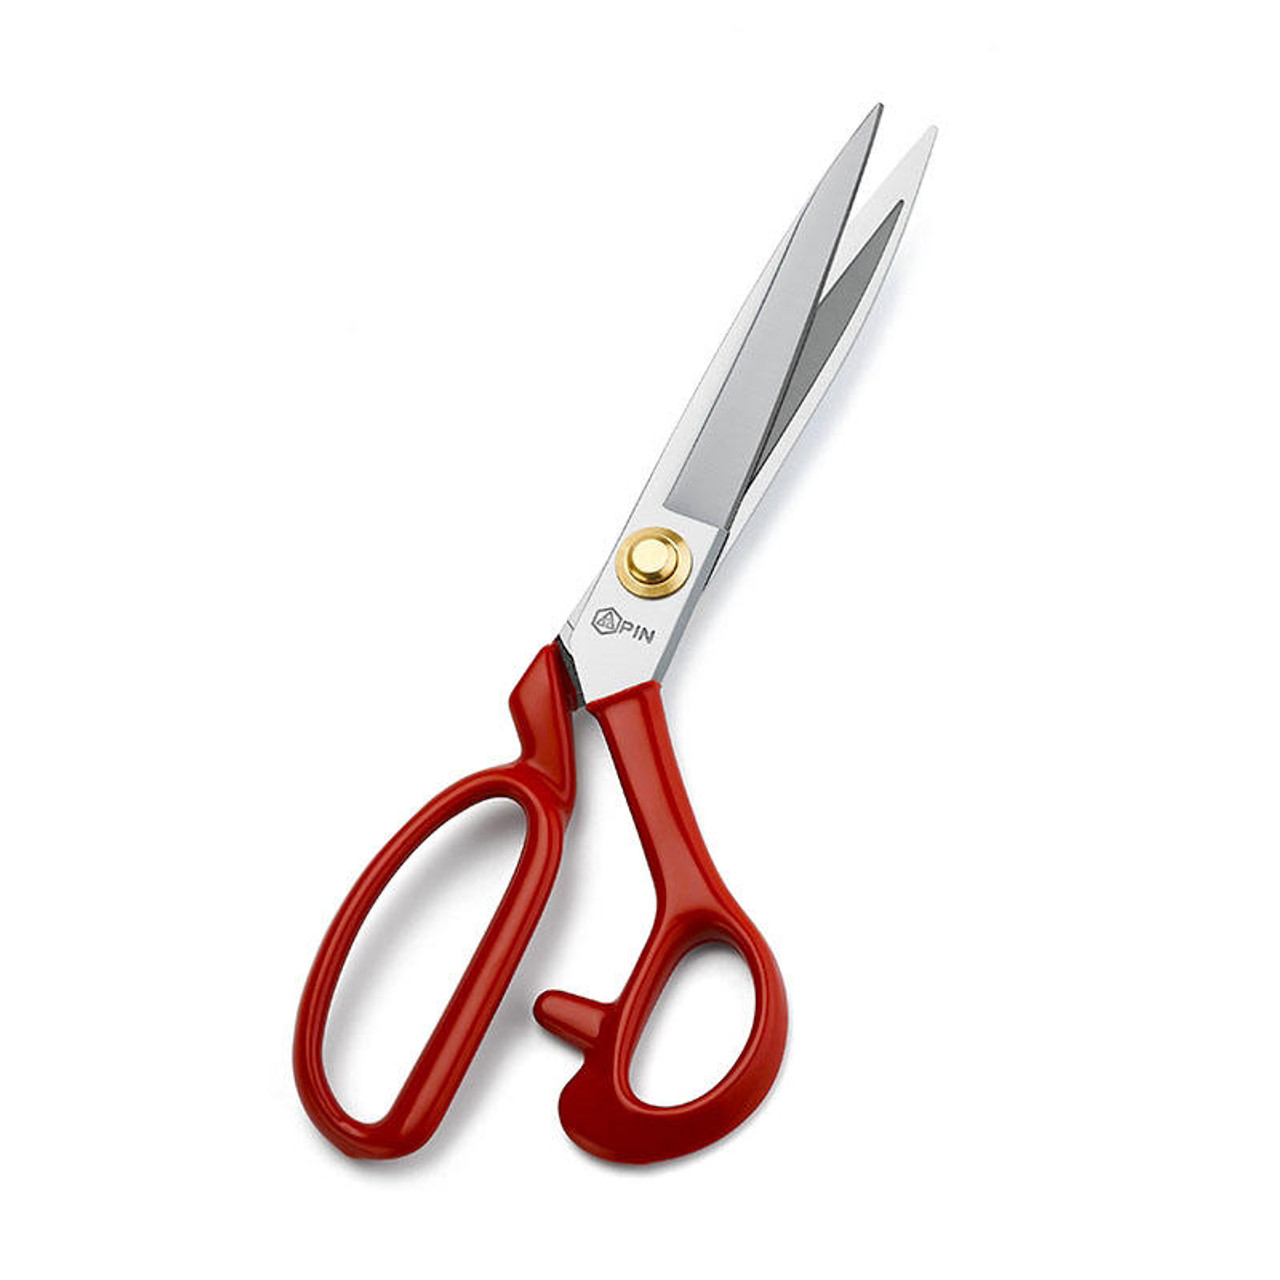 PIN Tailor scissors 11"